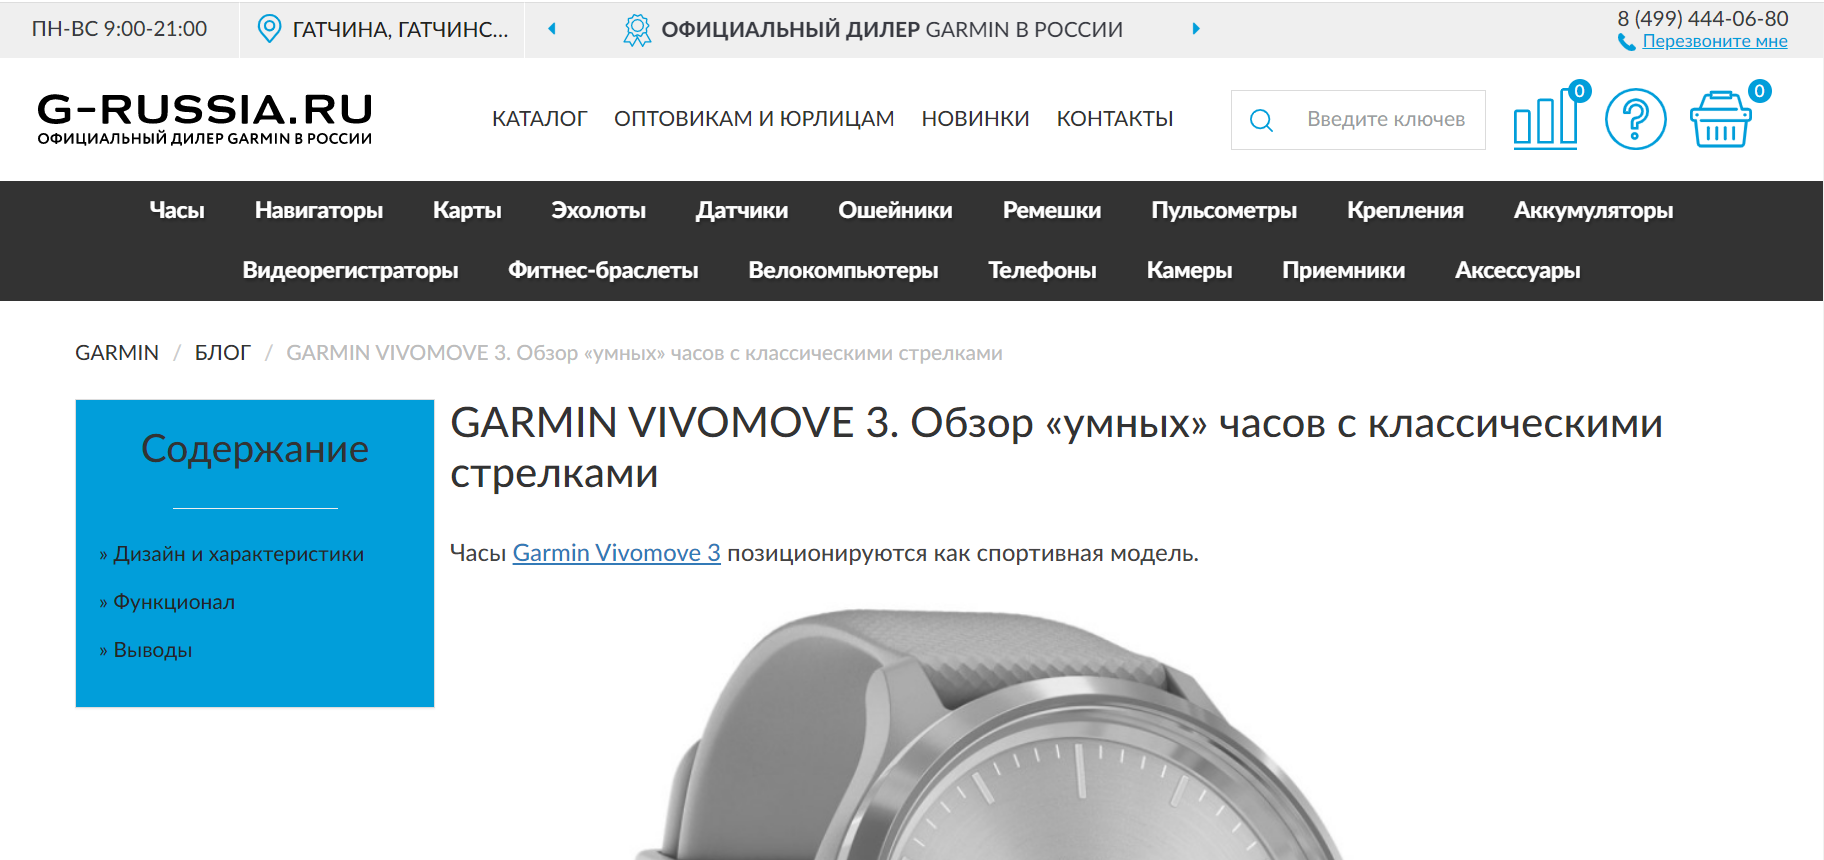 Garmin Vivomove 3. Обзор умных часов с классическими стрелками